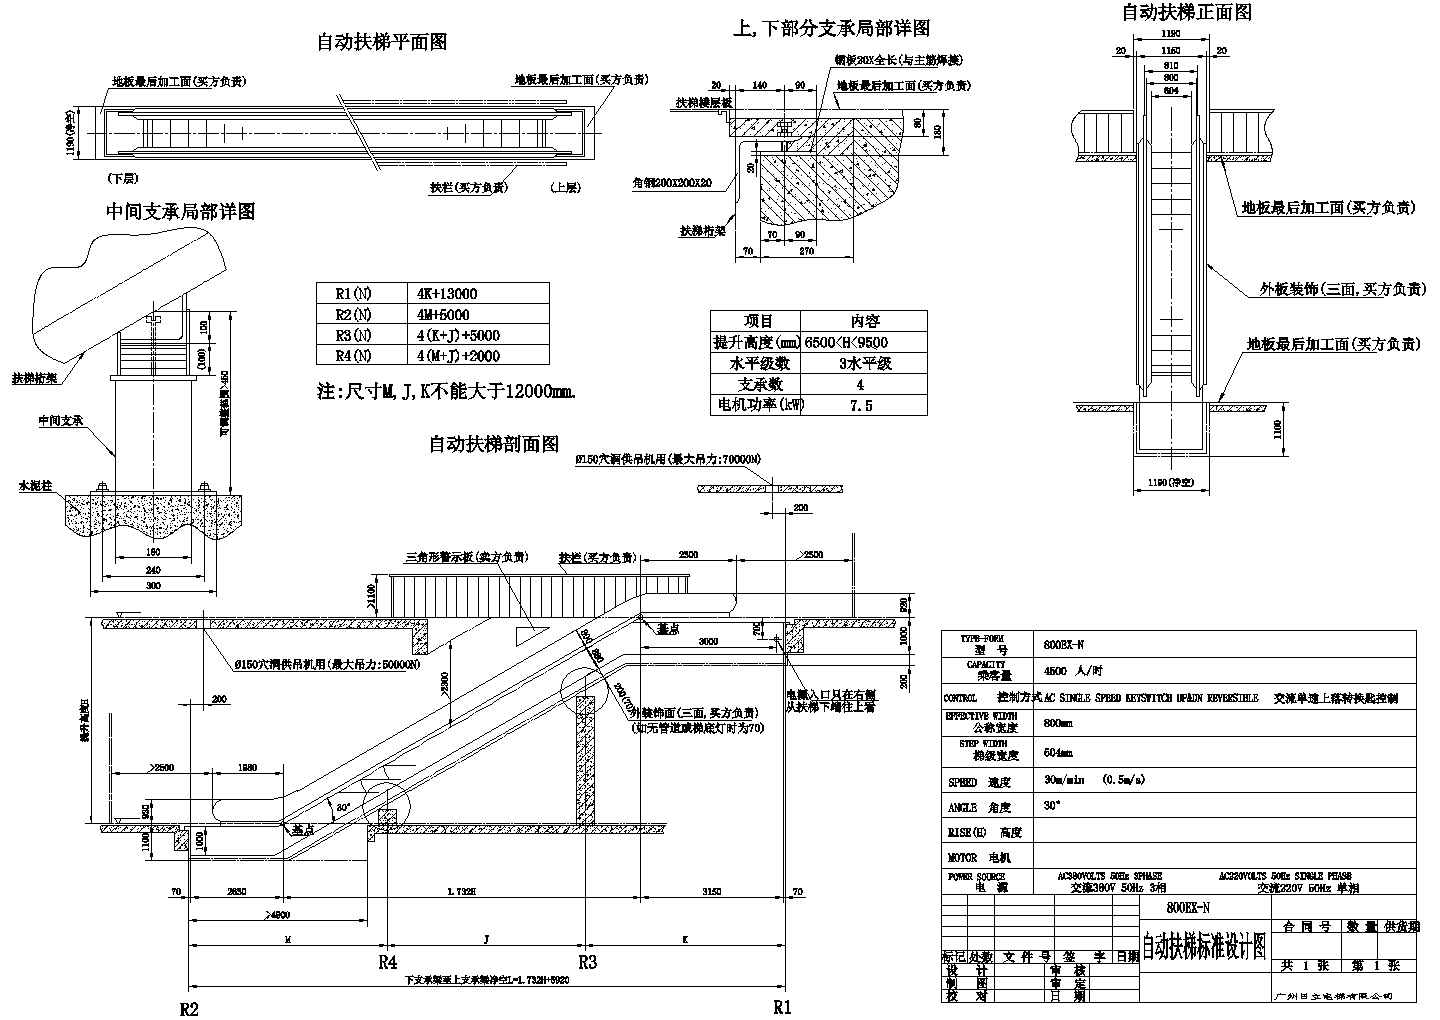 重庆江北区某商场800EX-N自动扶梯建筑设计CAD施工图(4点支承)